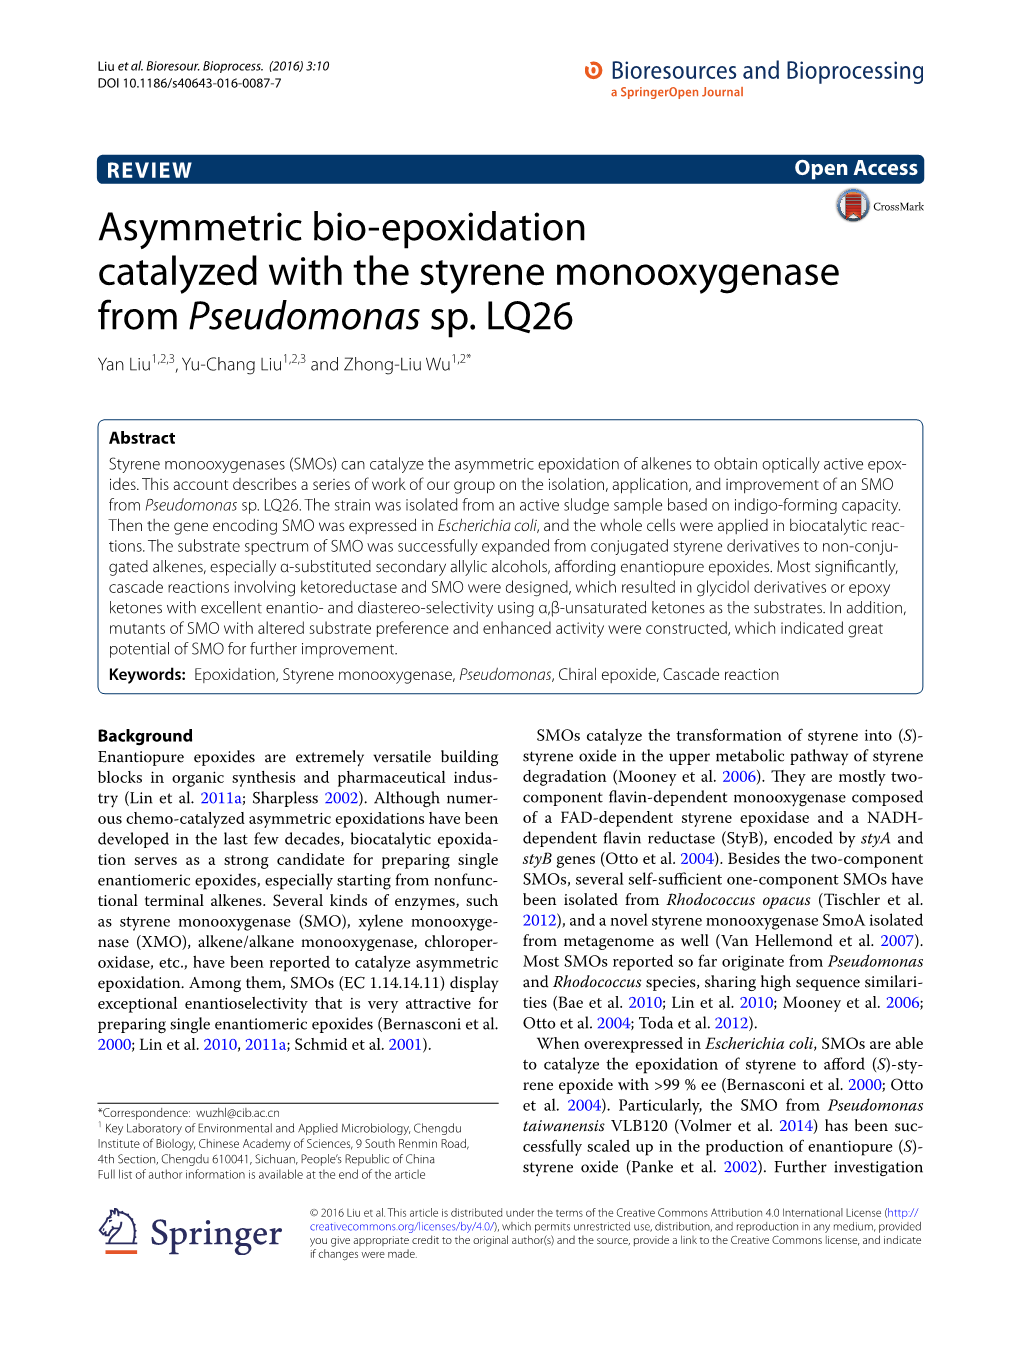 Asymmetric Bio-Epoxidation Catalyzed with the Styrene Monooxygenase